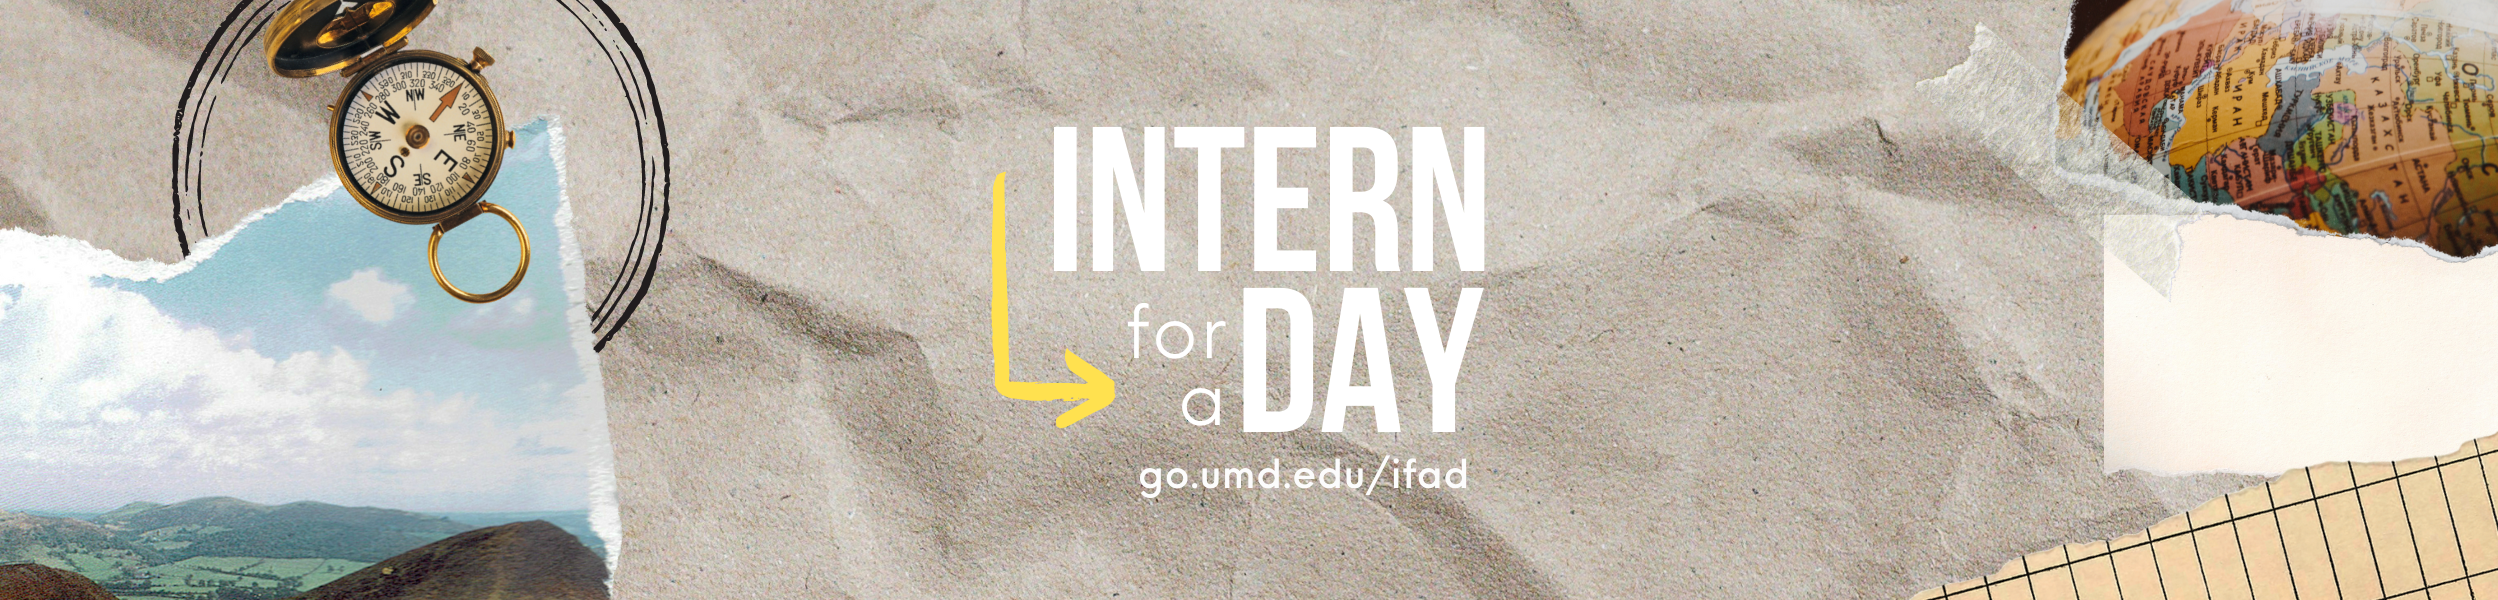 Intern for a Day, go.umd.edu/ifad